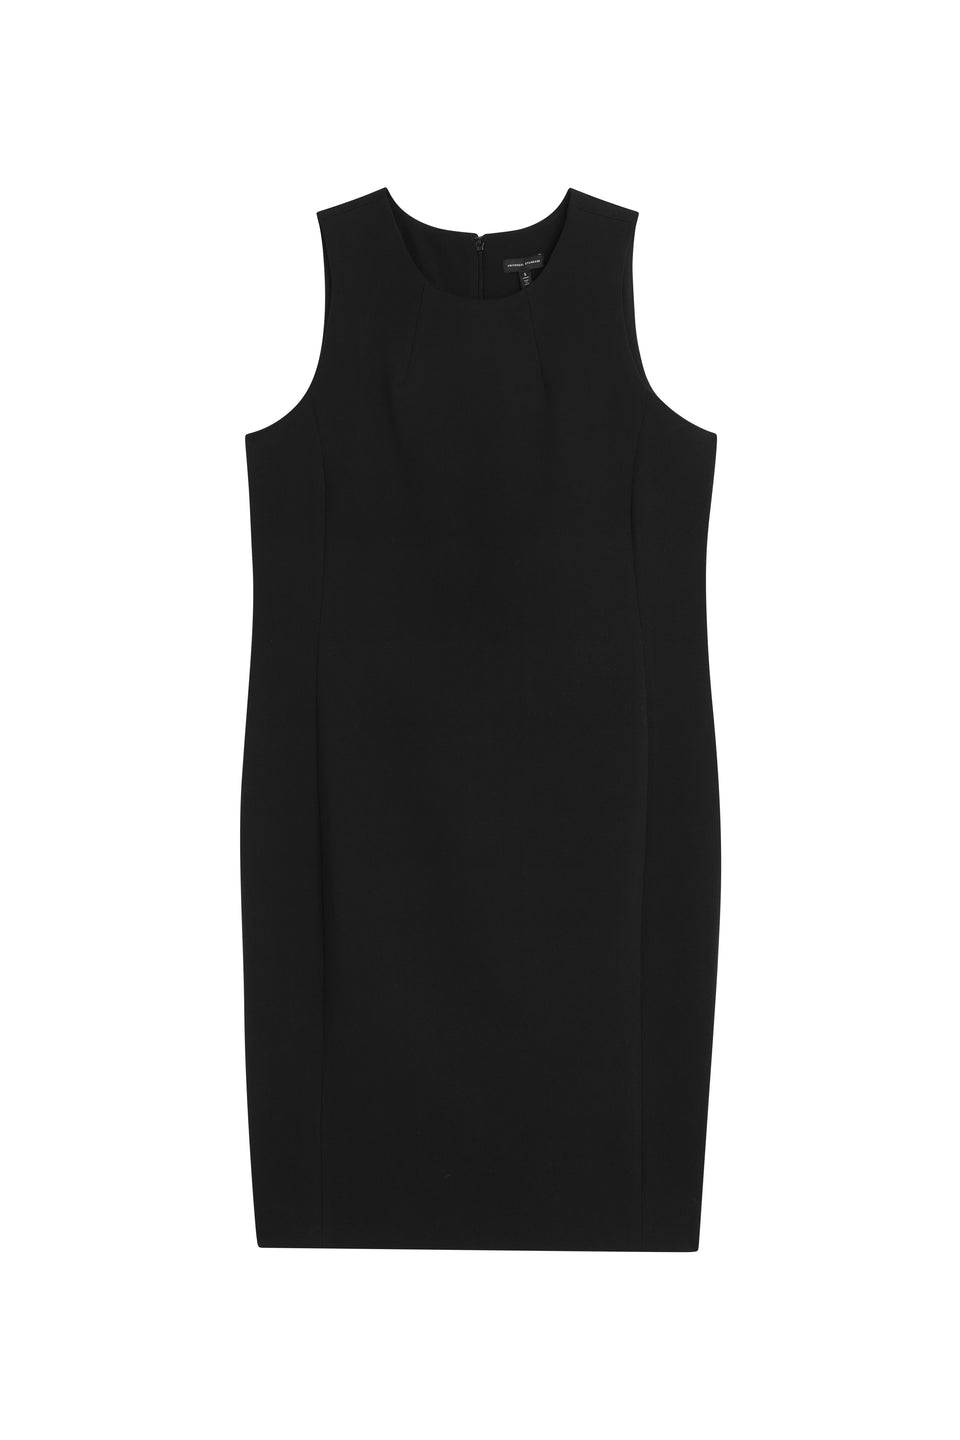 Henning x US Carlisle Crepe Dress - Black Zoom image 4